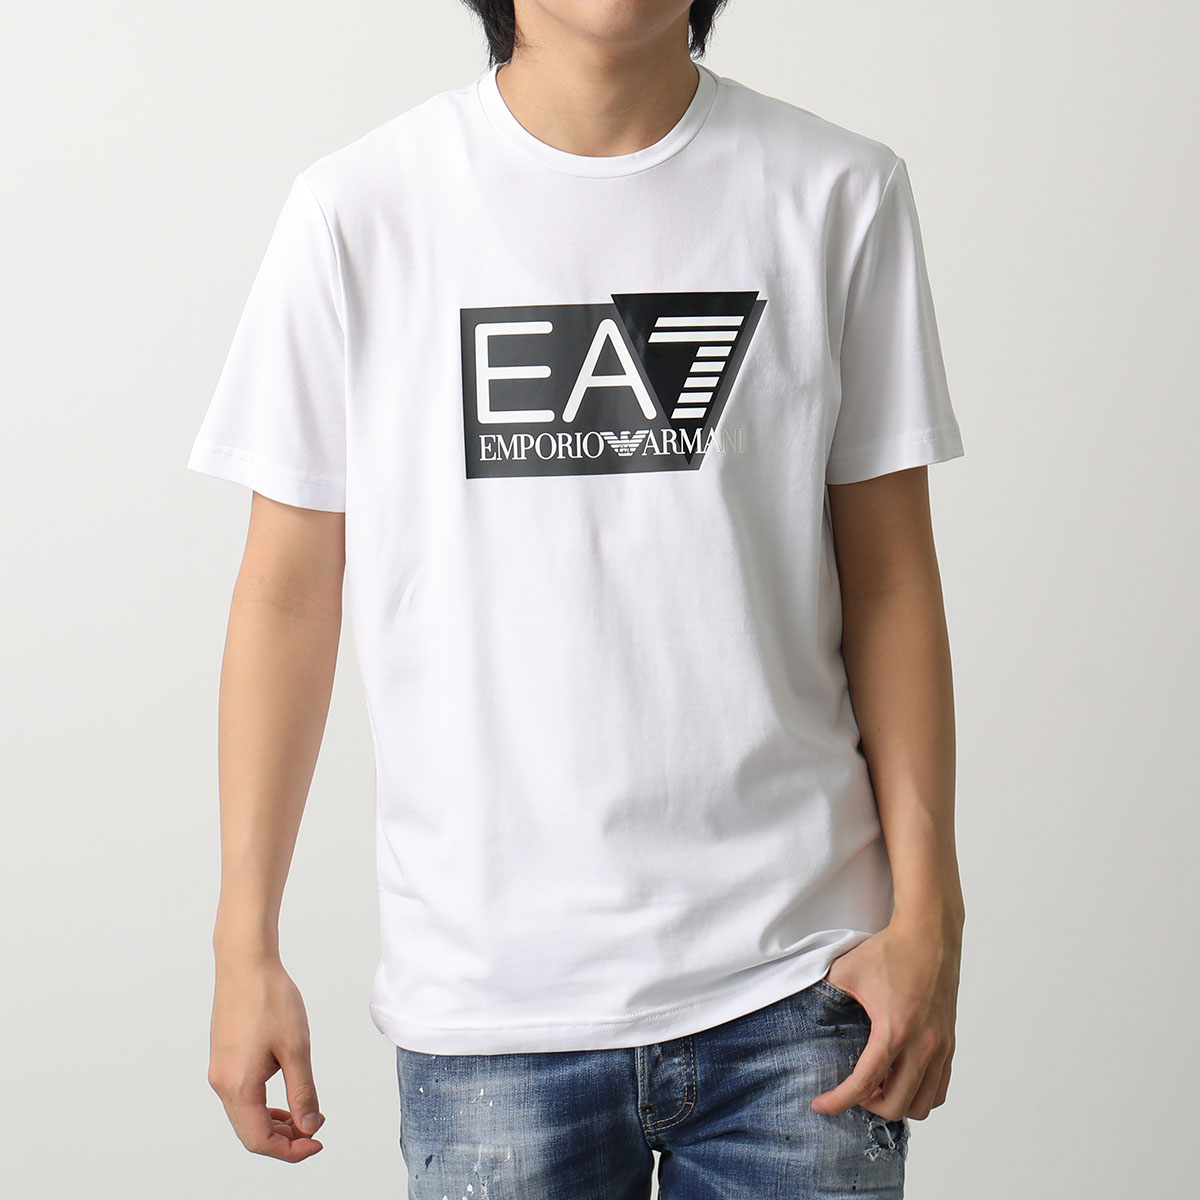 EA7 EMPORIO ARMANI エアセッテ エンポリオアルマーニ Tシャツ 3DPT62 